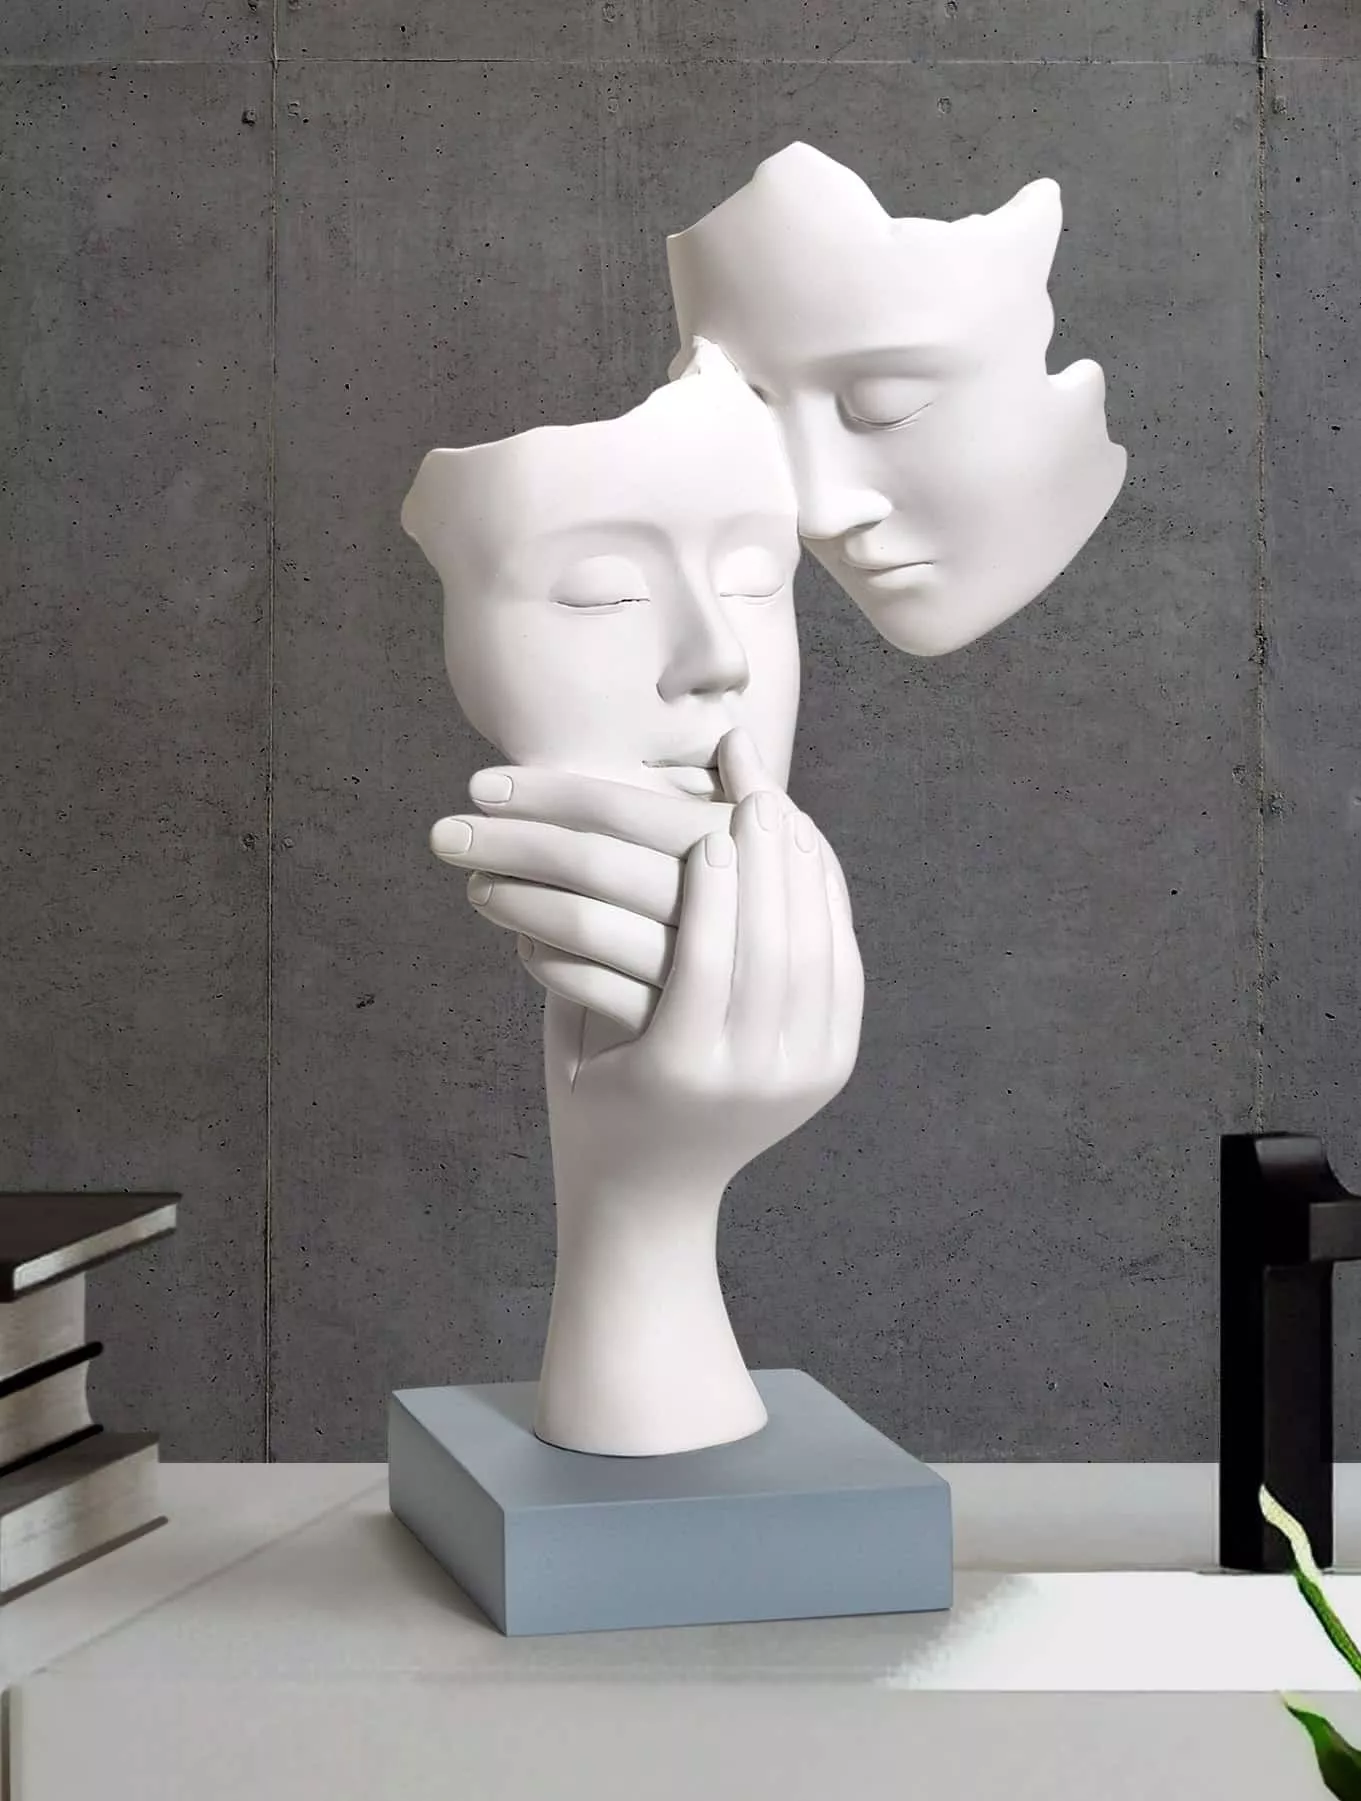 WWZYX Soprammobili Moderni Statua Scultura da InternoNordic Ceramica Busto Statua Vaso di Fiori Vaso Scultura Decorativa per la casa Moderna